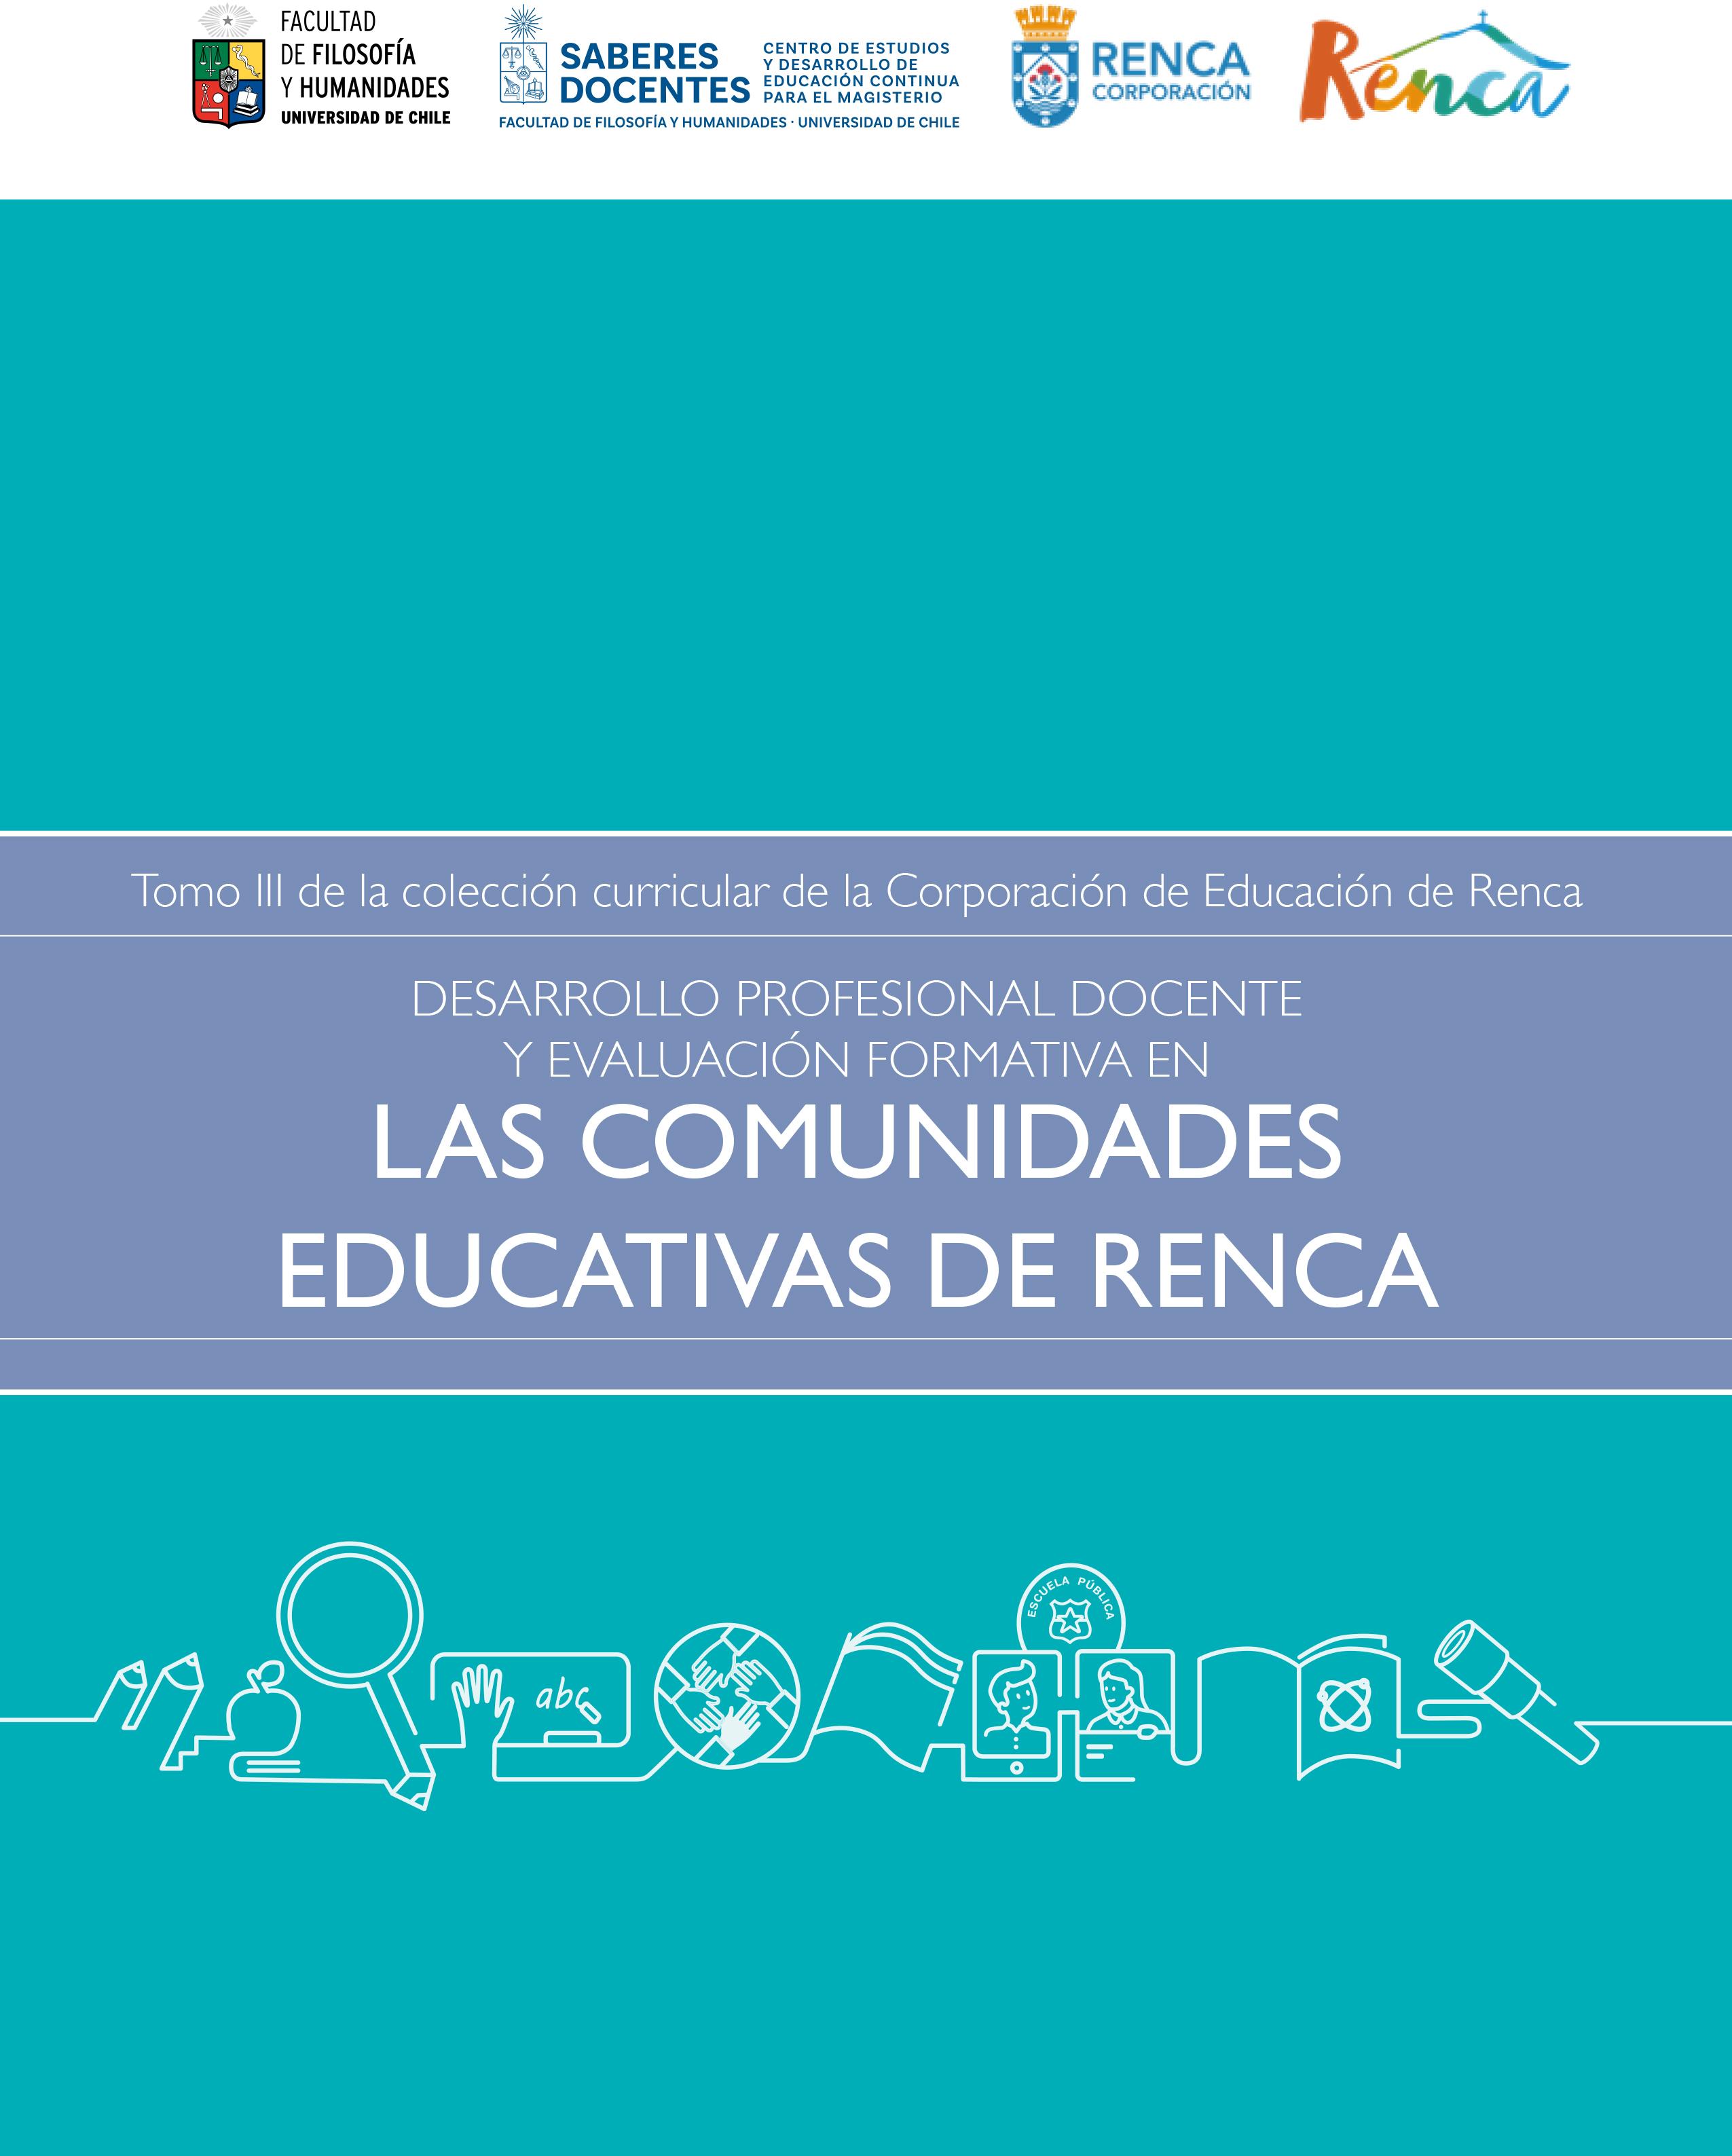 Desarrollo profesional docente y evaluación formativa en las comunidades educativas de Renca